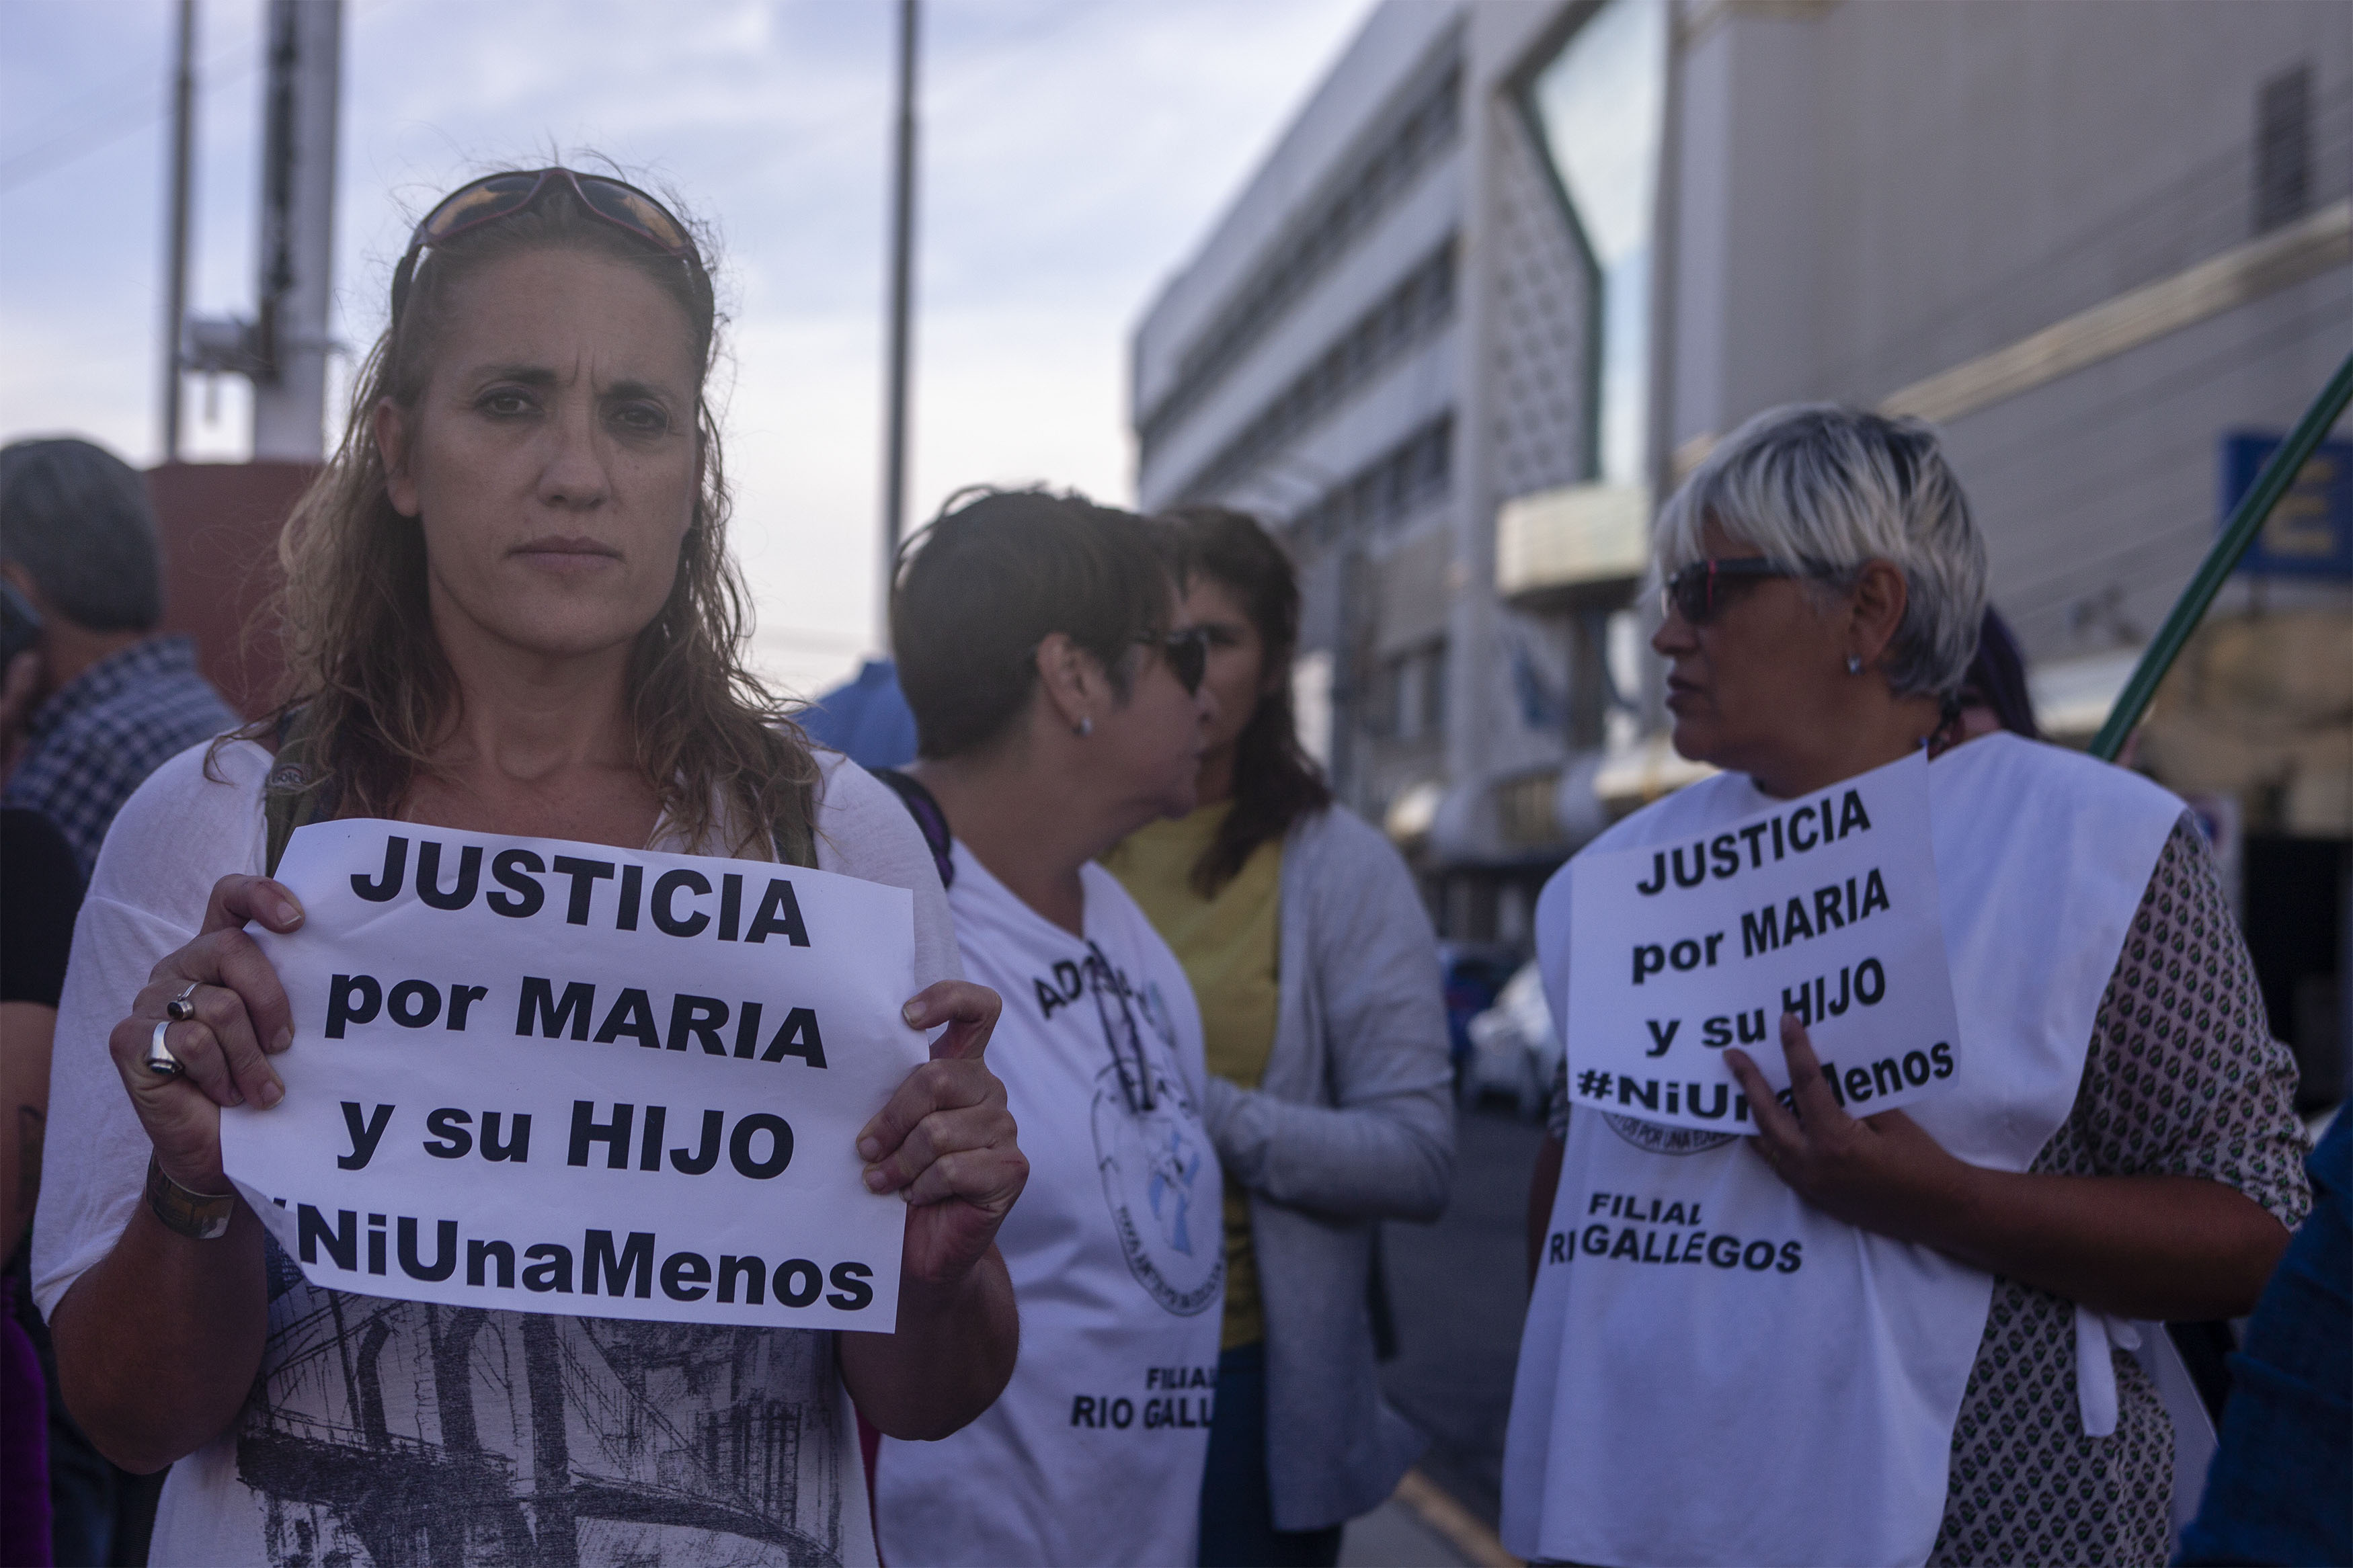 Grupo de mujeres reclaman justicia por María y su hijo asesinado en la localidad de Puerto Deseado - Foto: Agencia Télam. 